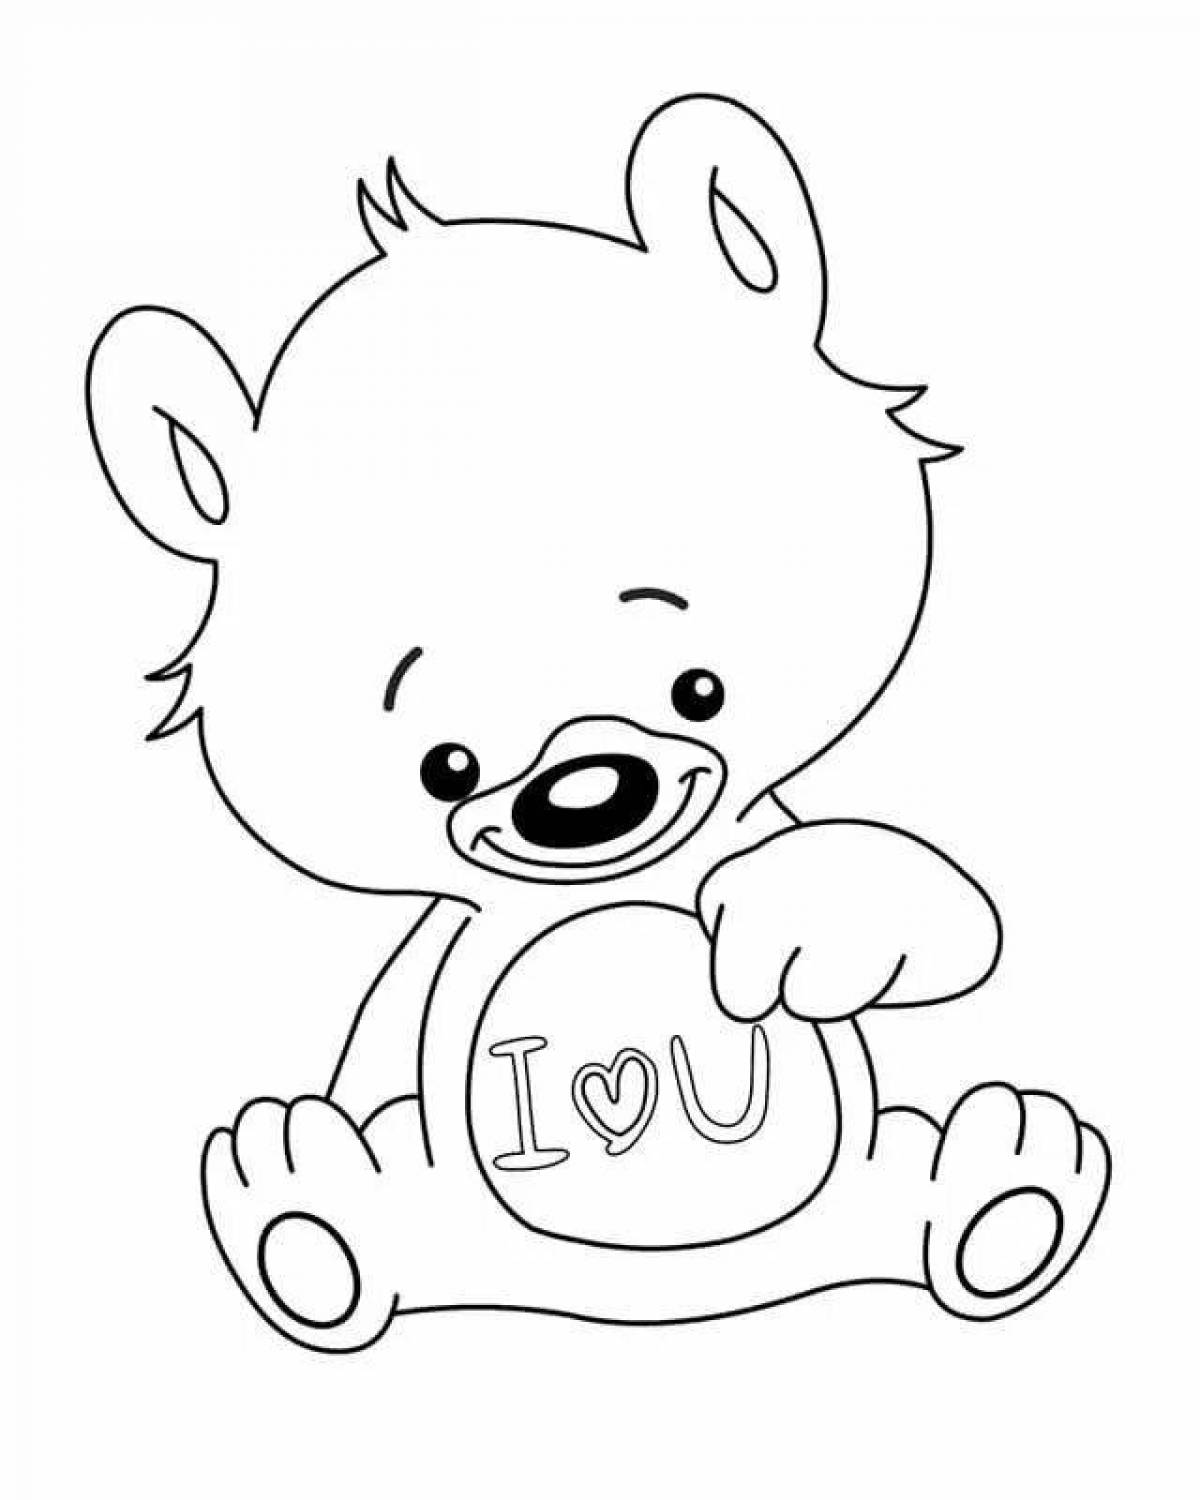 Coloring book funny cute bear